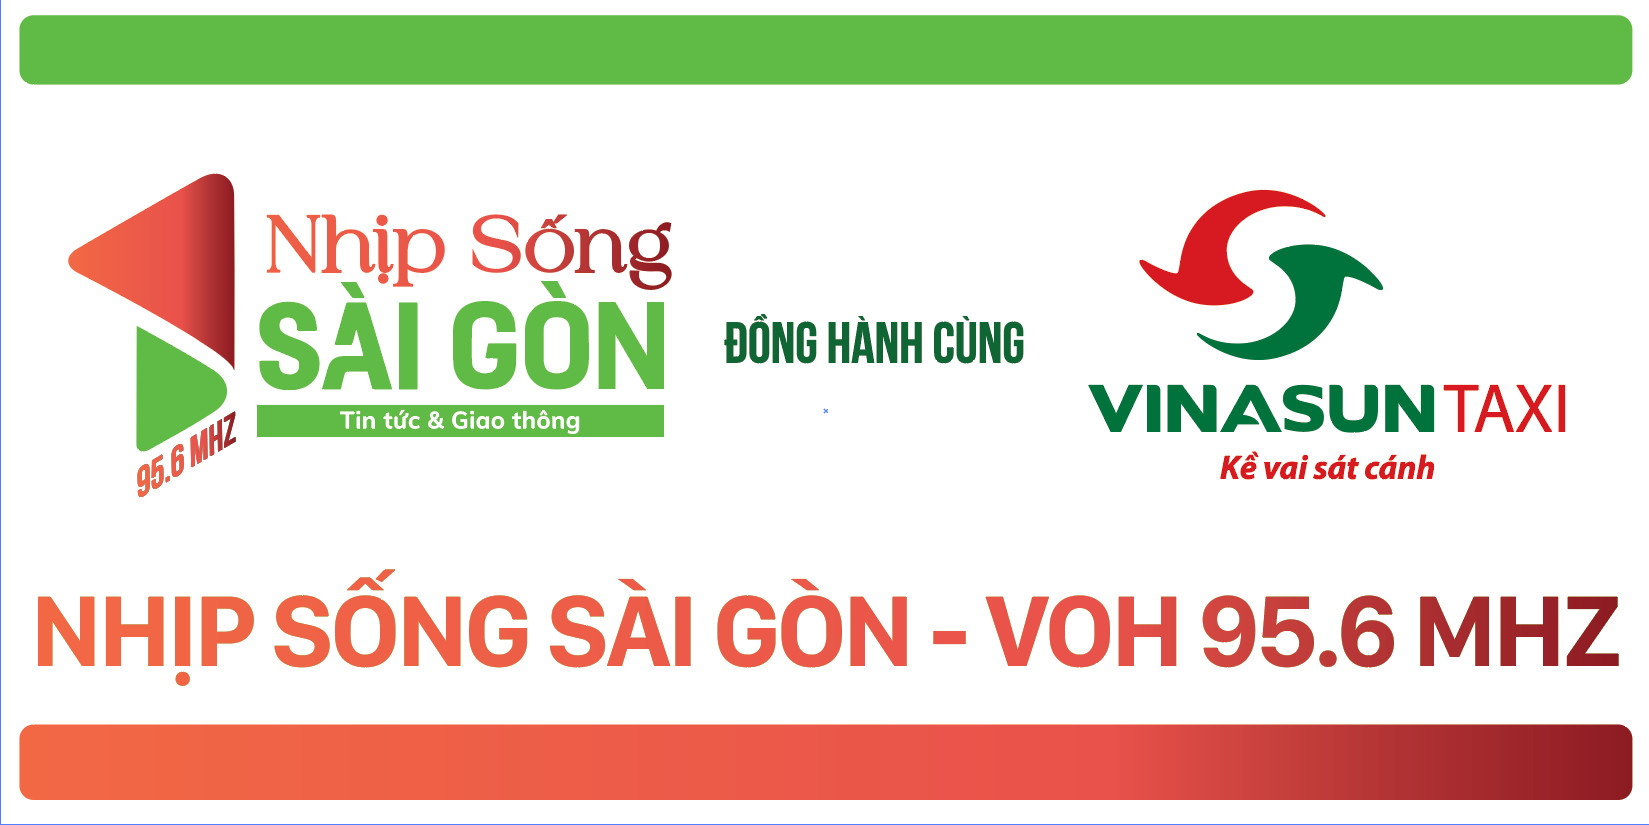 Vinasun Taxi đồng hành cùng "Nhịp sống Sài Gòn" - VOH 95.6MHZ